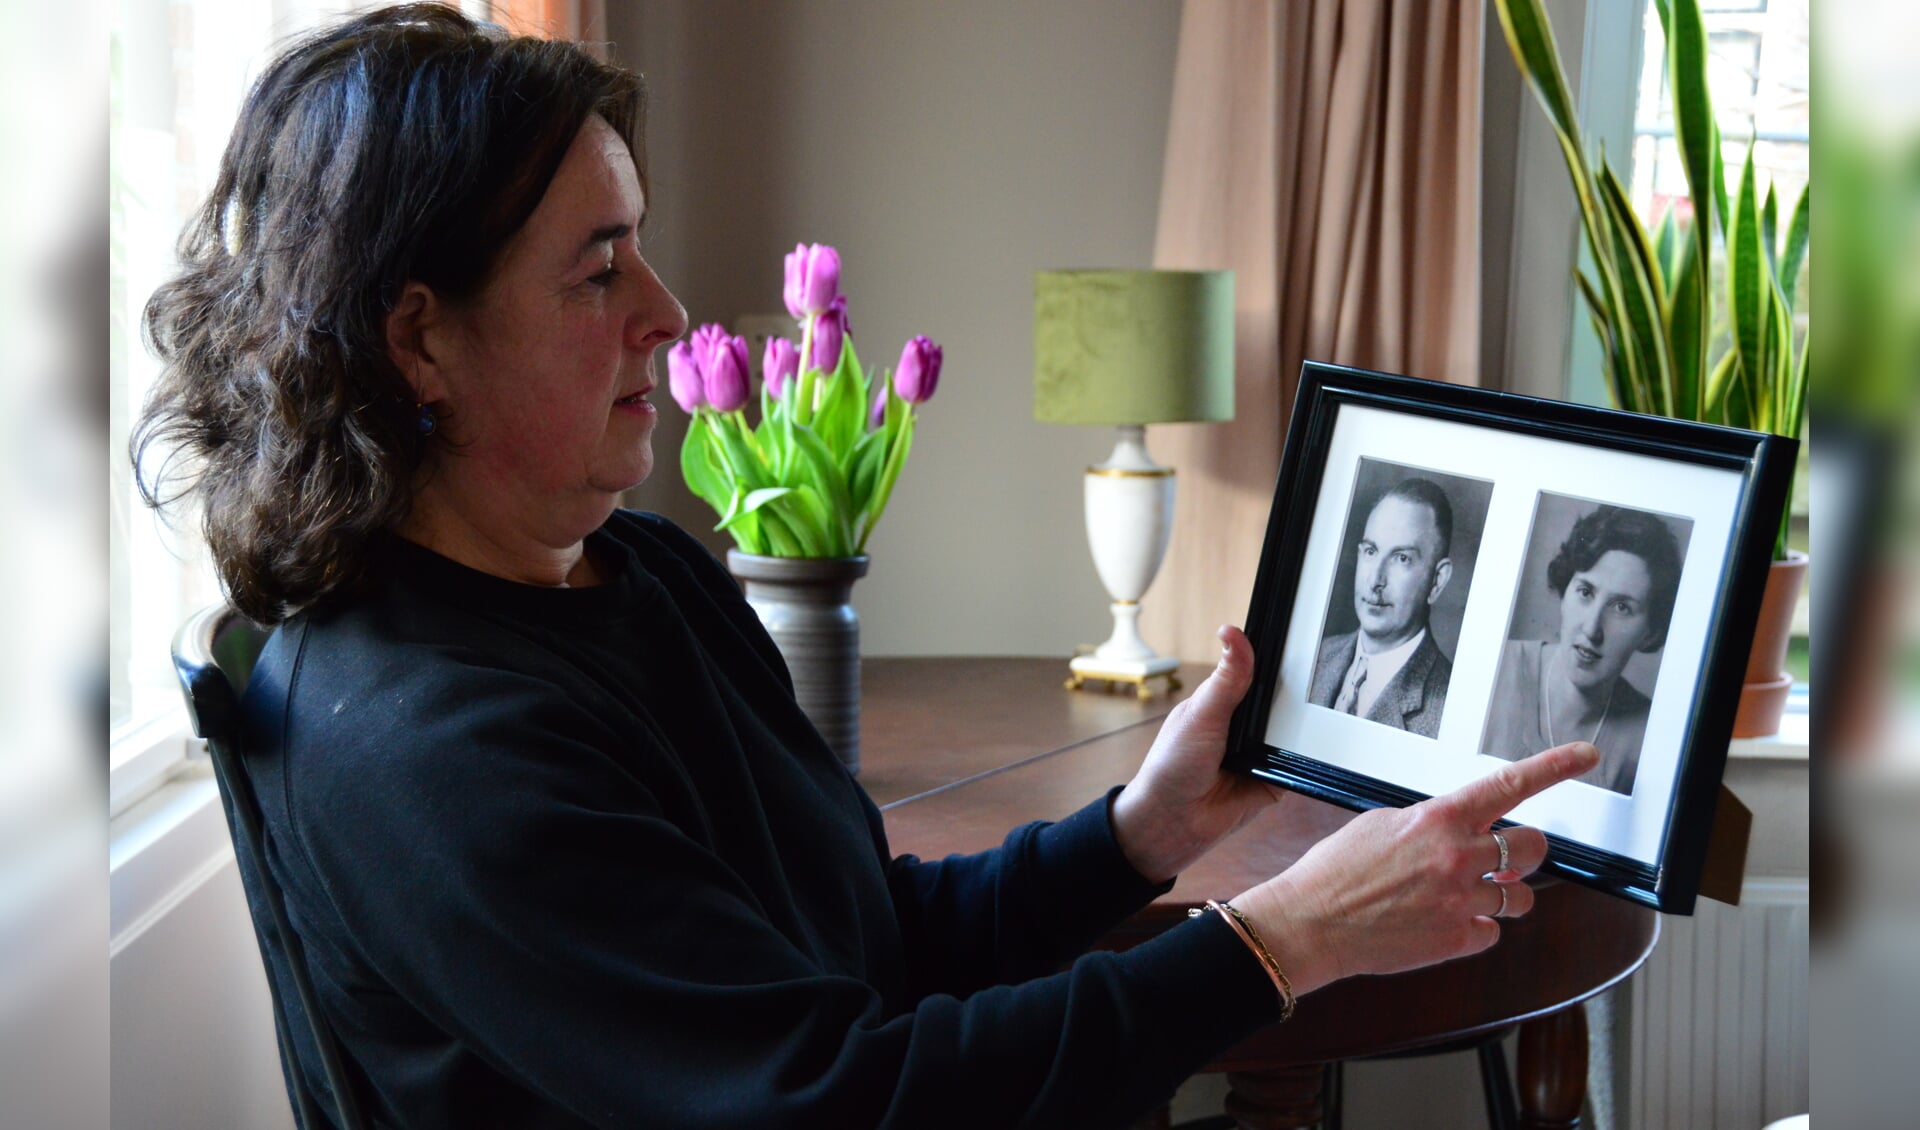 Esther Bánki toont de foto's van Siegfried en Karoline Günzburger die tijdens de Tweede Wereldoorlog in het huis woonden waar zij nu woont. Foto: Alize Hillebrink